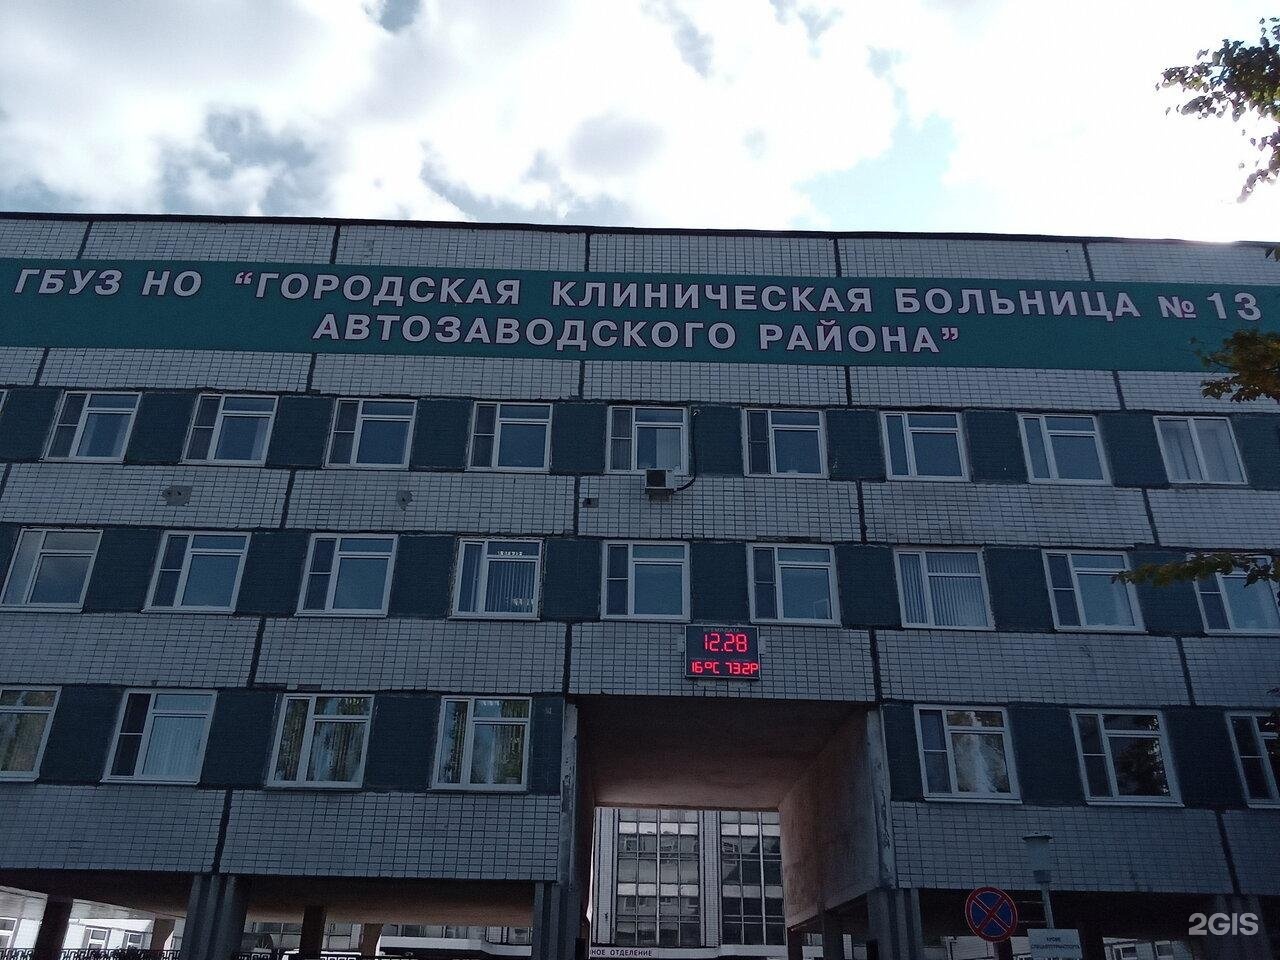 13 Больница Нижний Новгород